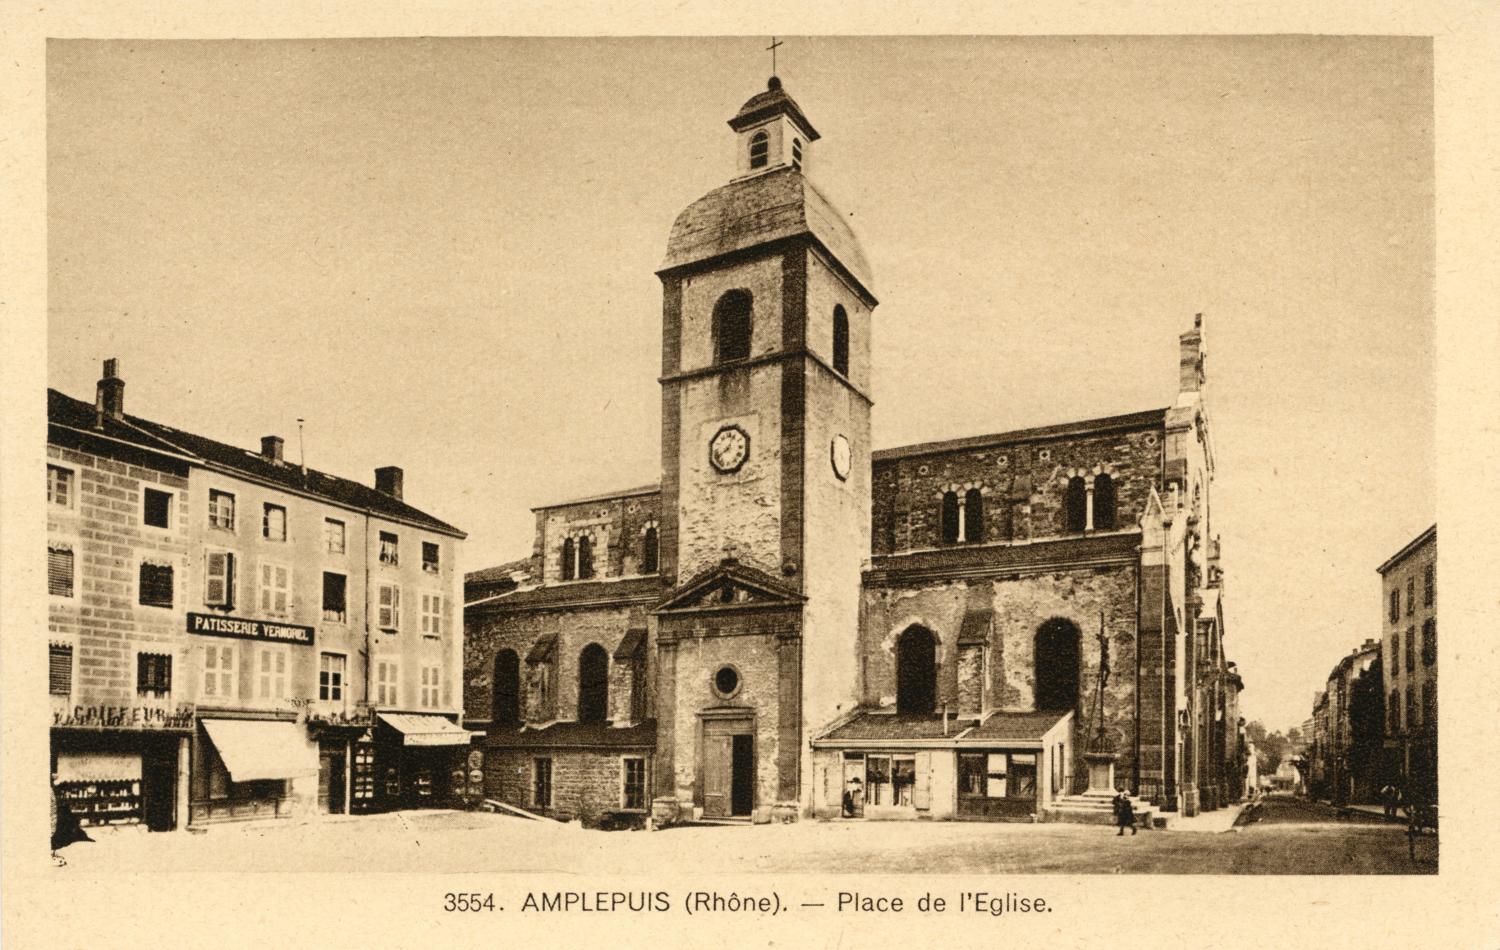 Amplepuis (Rhône). - Place de l'église